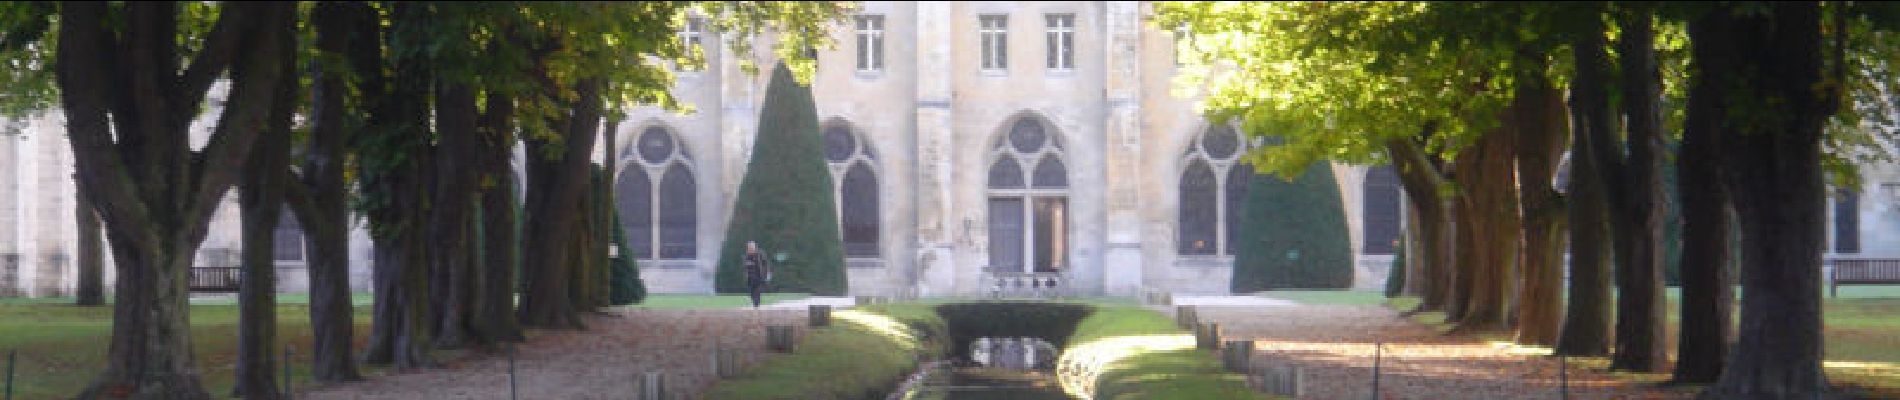 Percorso Marcia Viarmes - Autour de l'Abbaye de Royaumont en bord de l'Oise - Photo